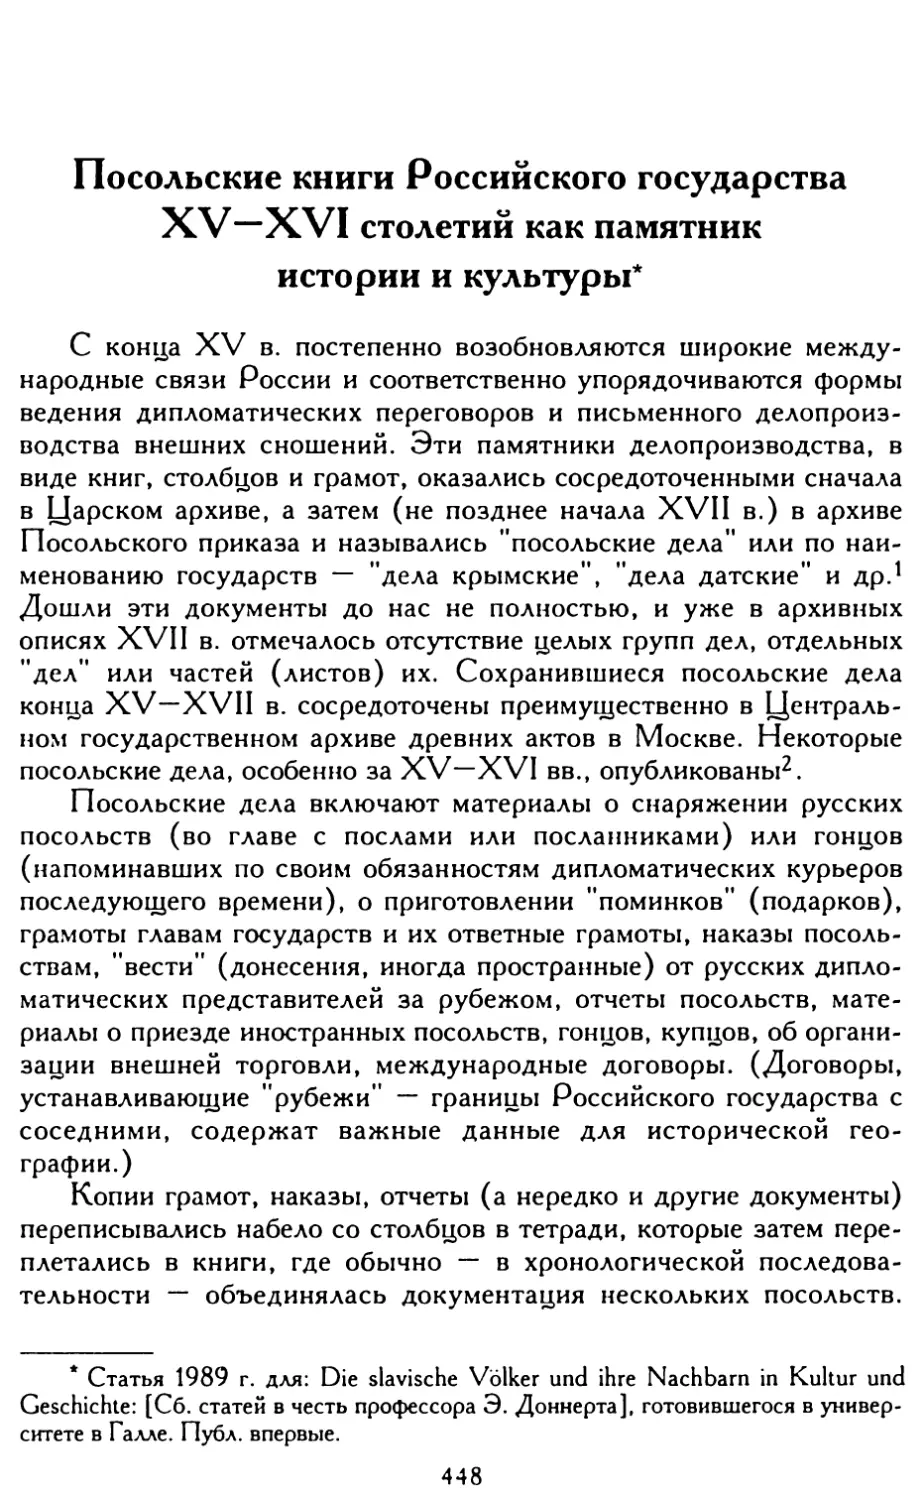 Посольские книги Российского государства XV—XVI столетий как памятник истории и культуры